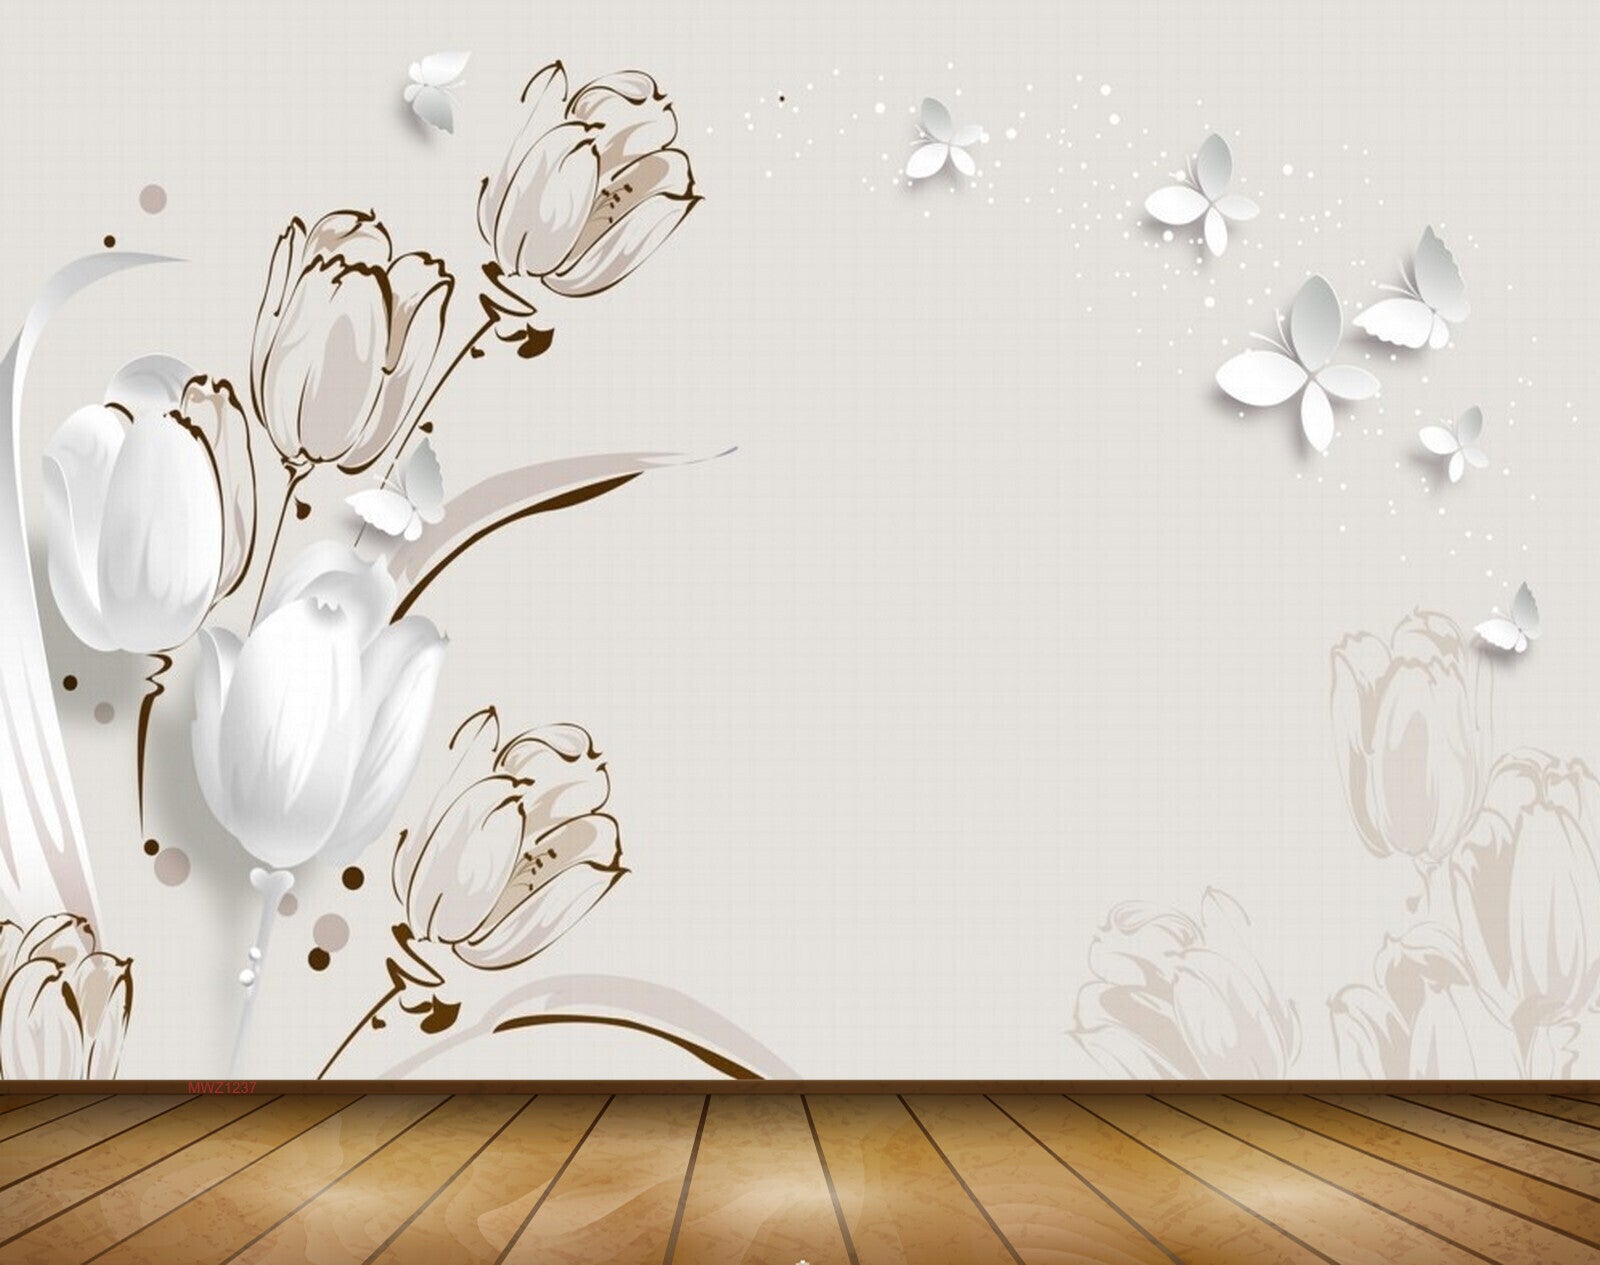 Avikalp MWZ1237 White Flowers Butterflies 3D HD Wallpaper